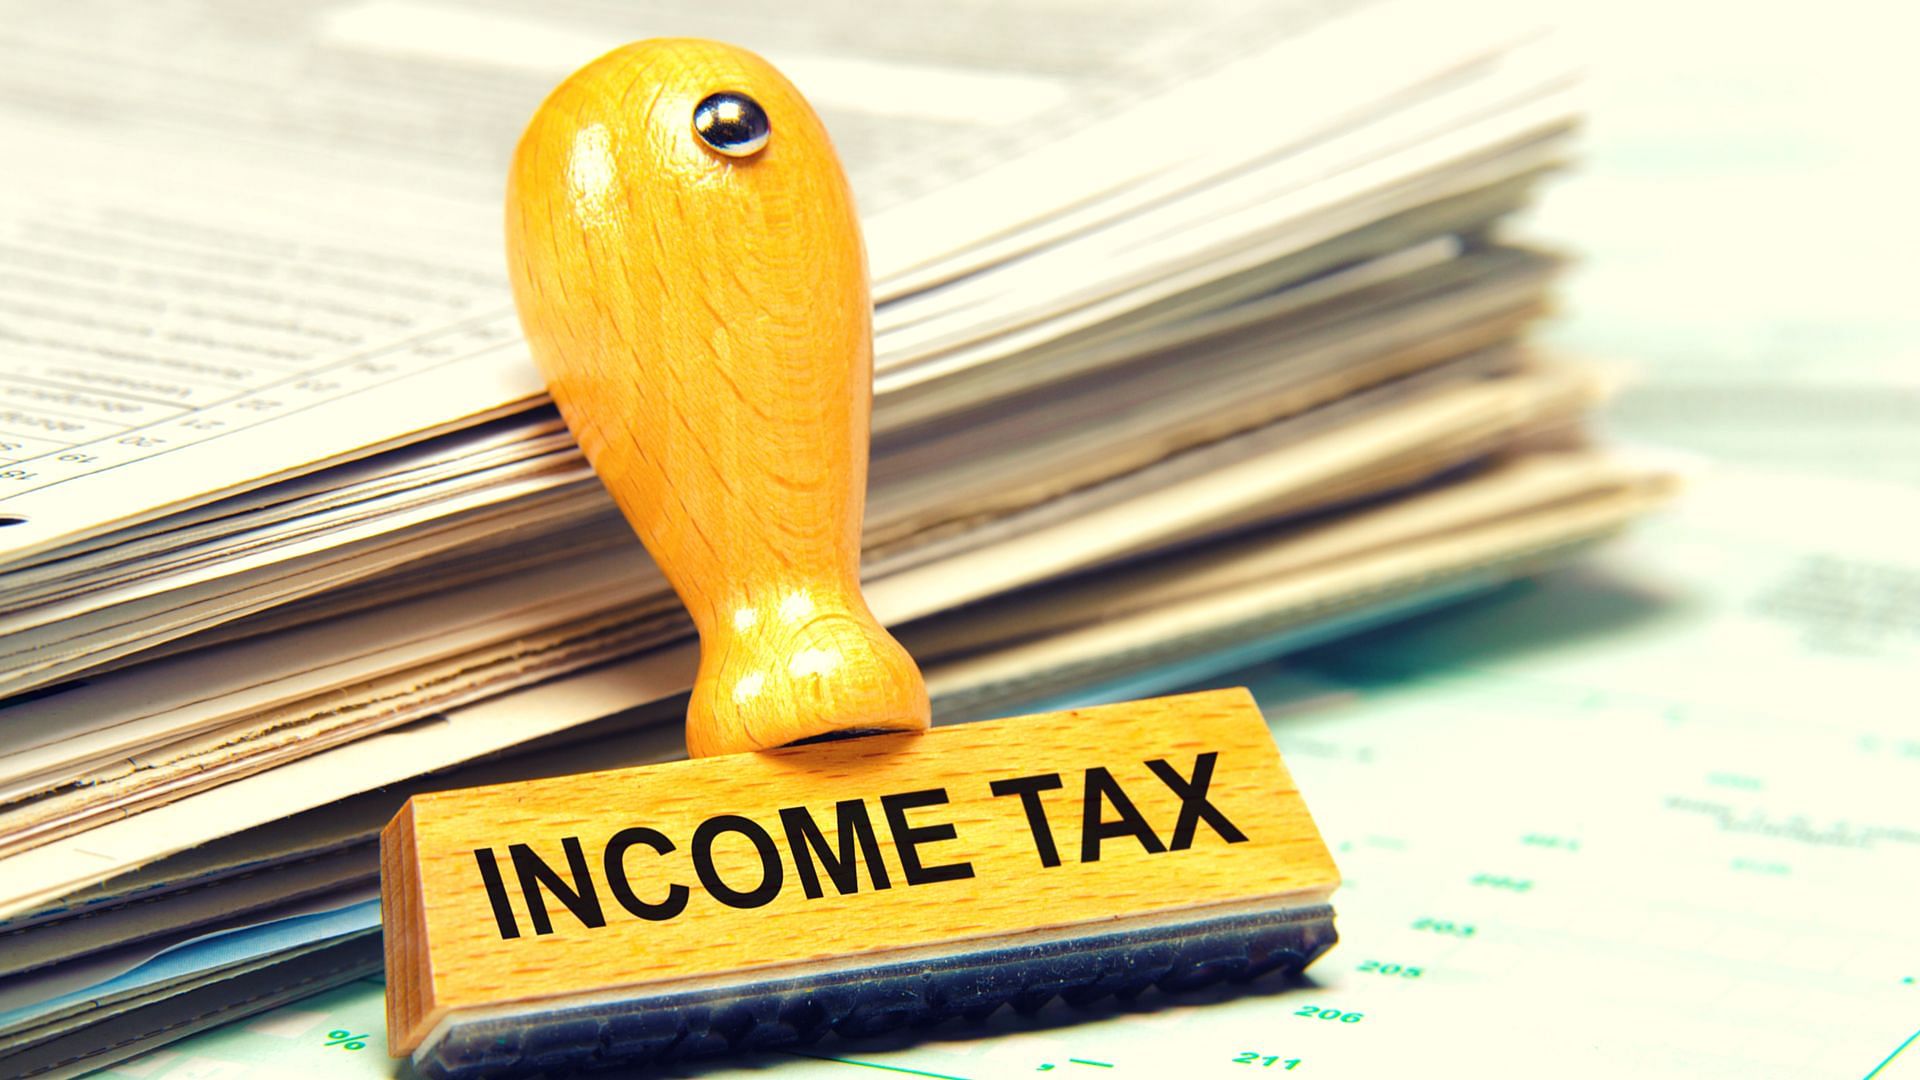 Income tax department अब बैंक, पोस्ट ऑफिस के साथ साझा करेगा यें जानकारी